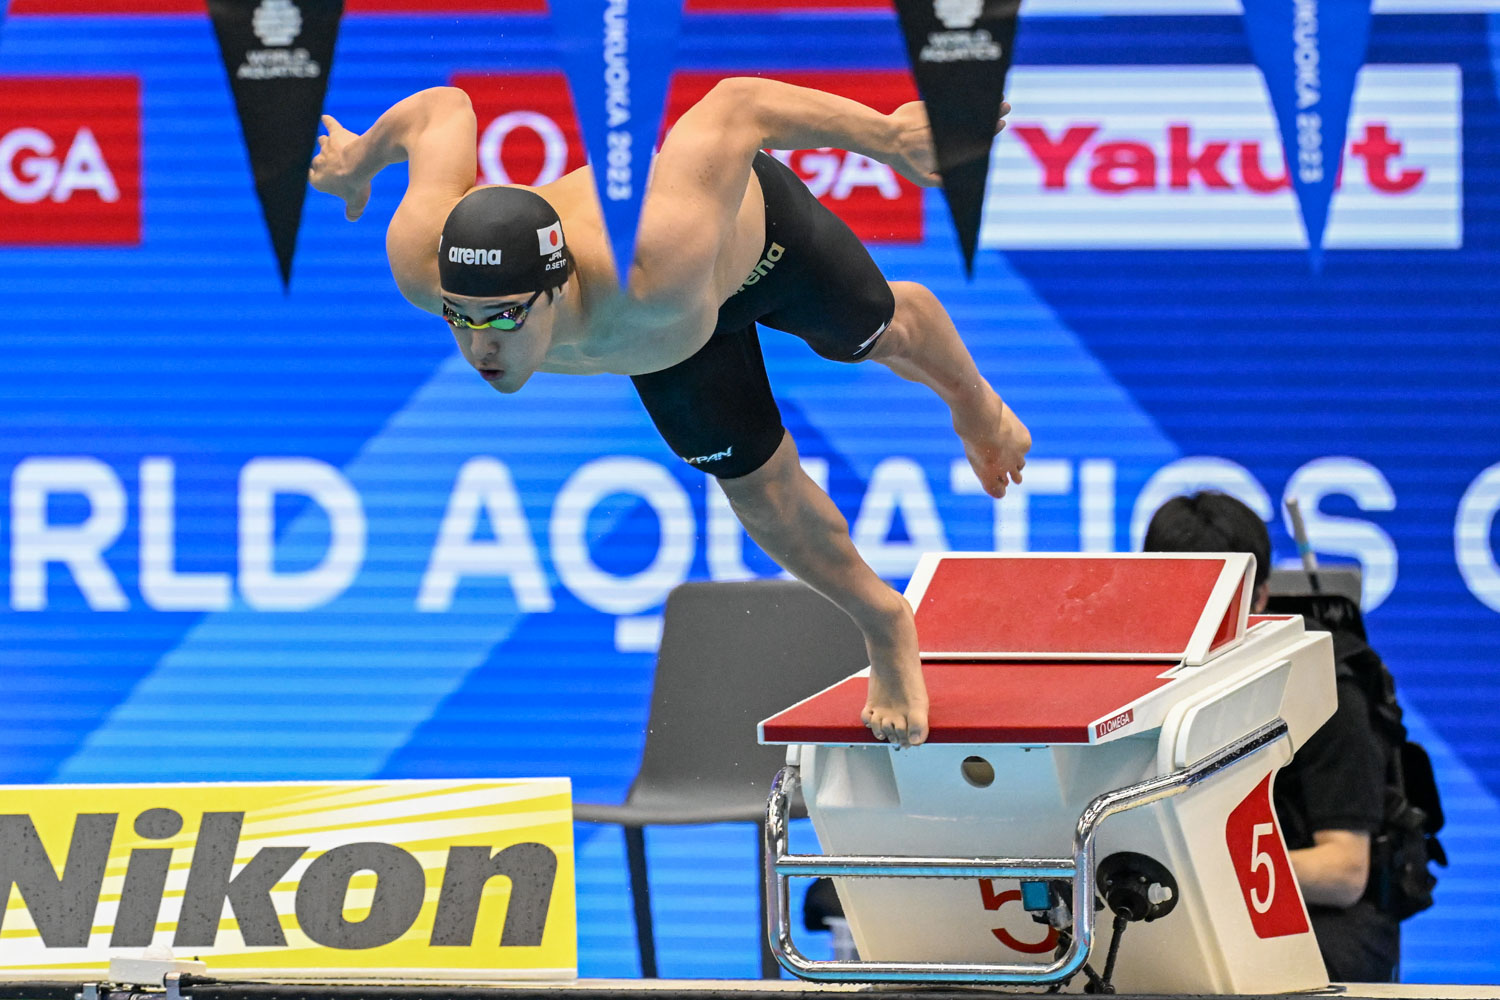 日本の瀬戸多也選手が11時間目にオリンピック出場権を獲得